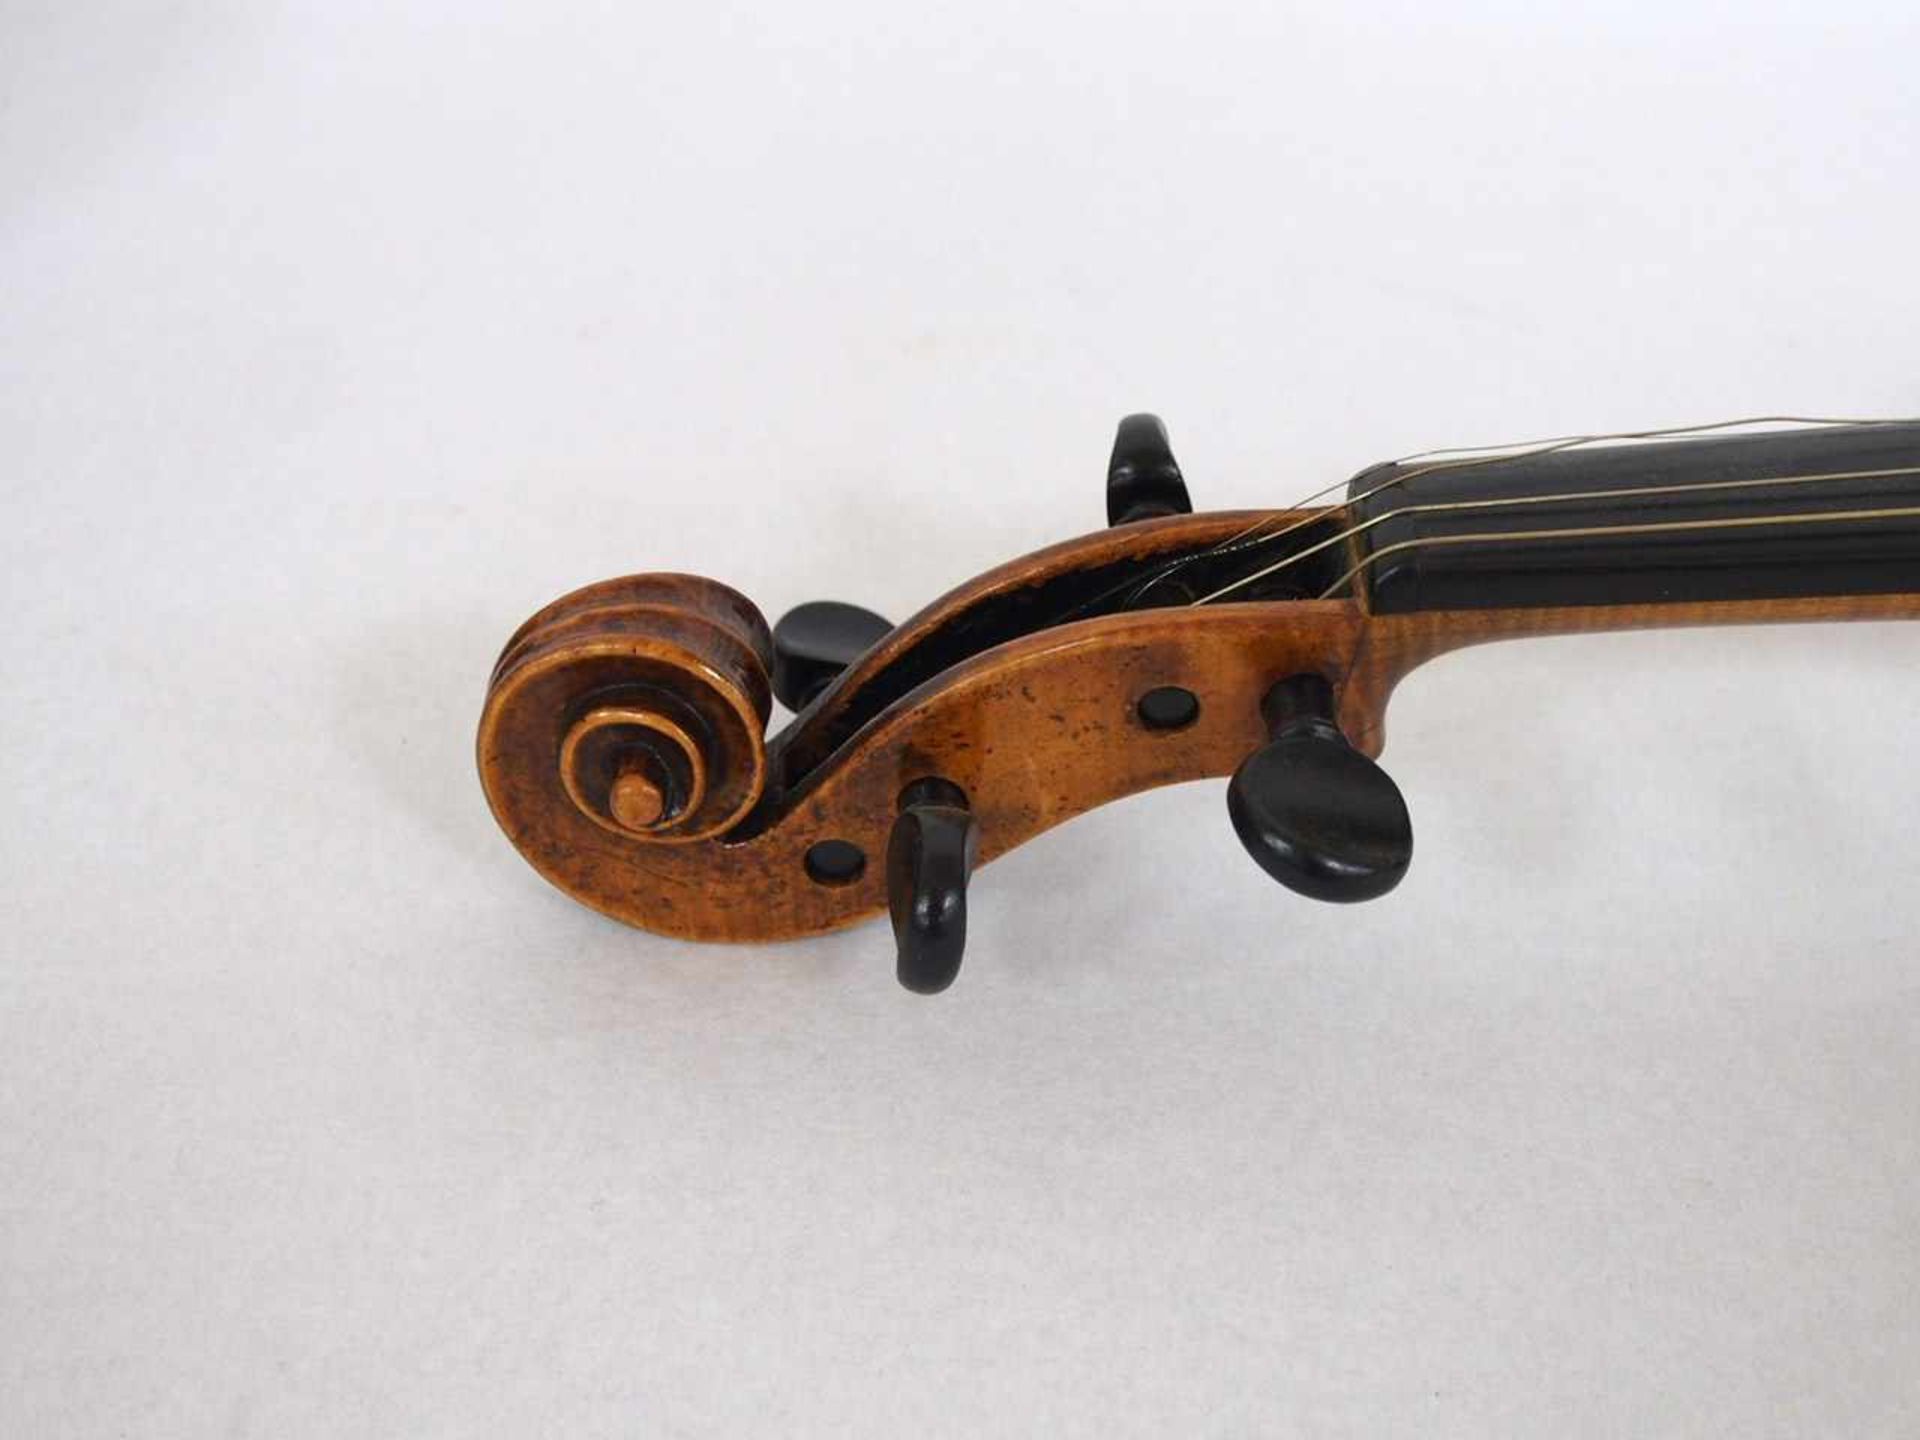 ViolineFichte (Decke), Ahorn (Zargen und Boden), Kopie nach Stradivari, Deutsch 19. Jahrhundert, - Bild 5 aus 6